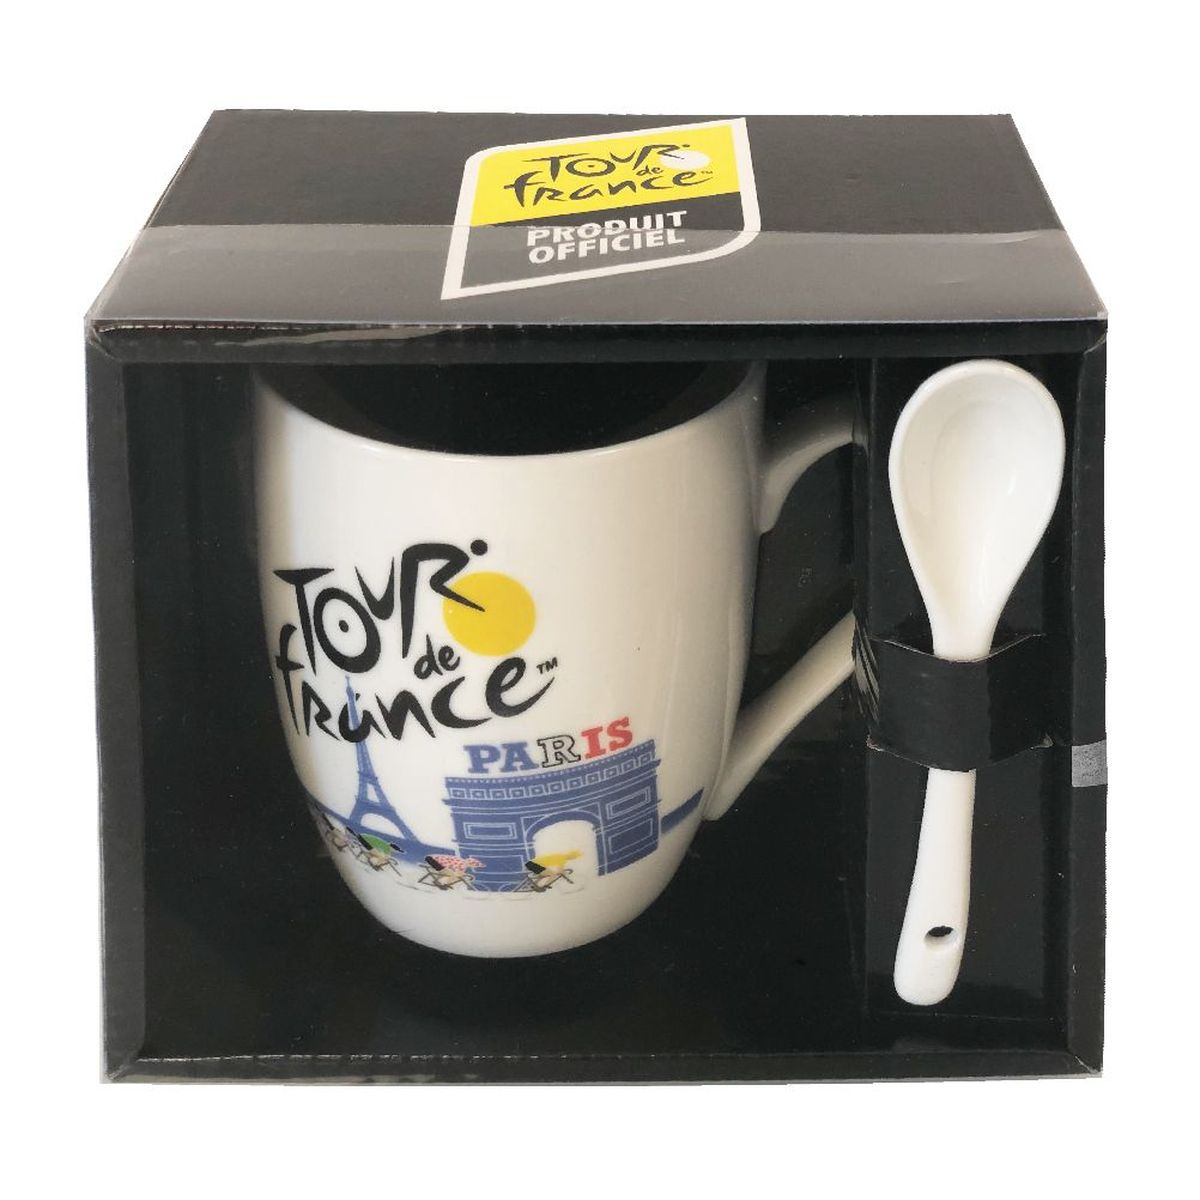 Tour de France ceramic mug with its spoon